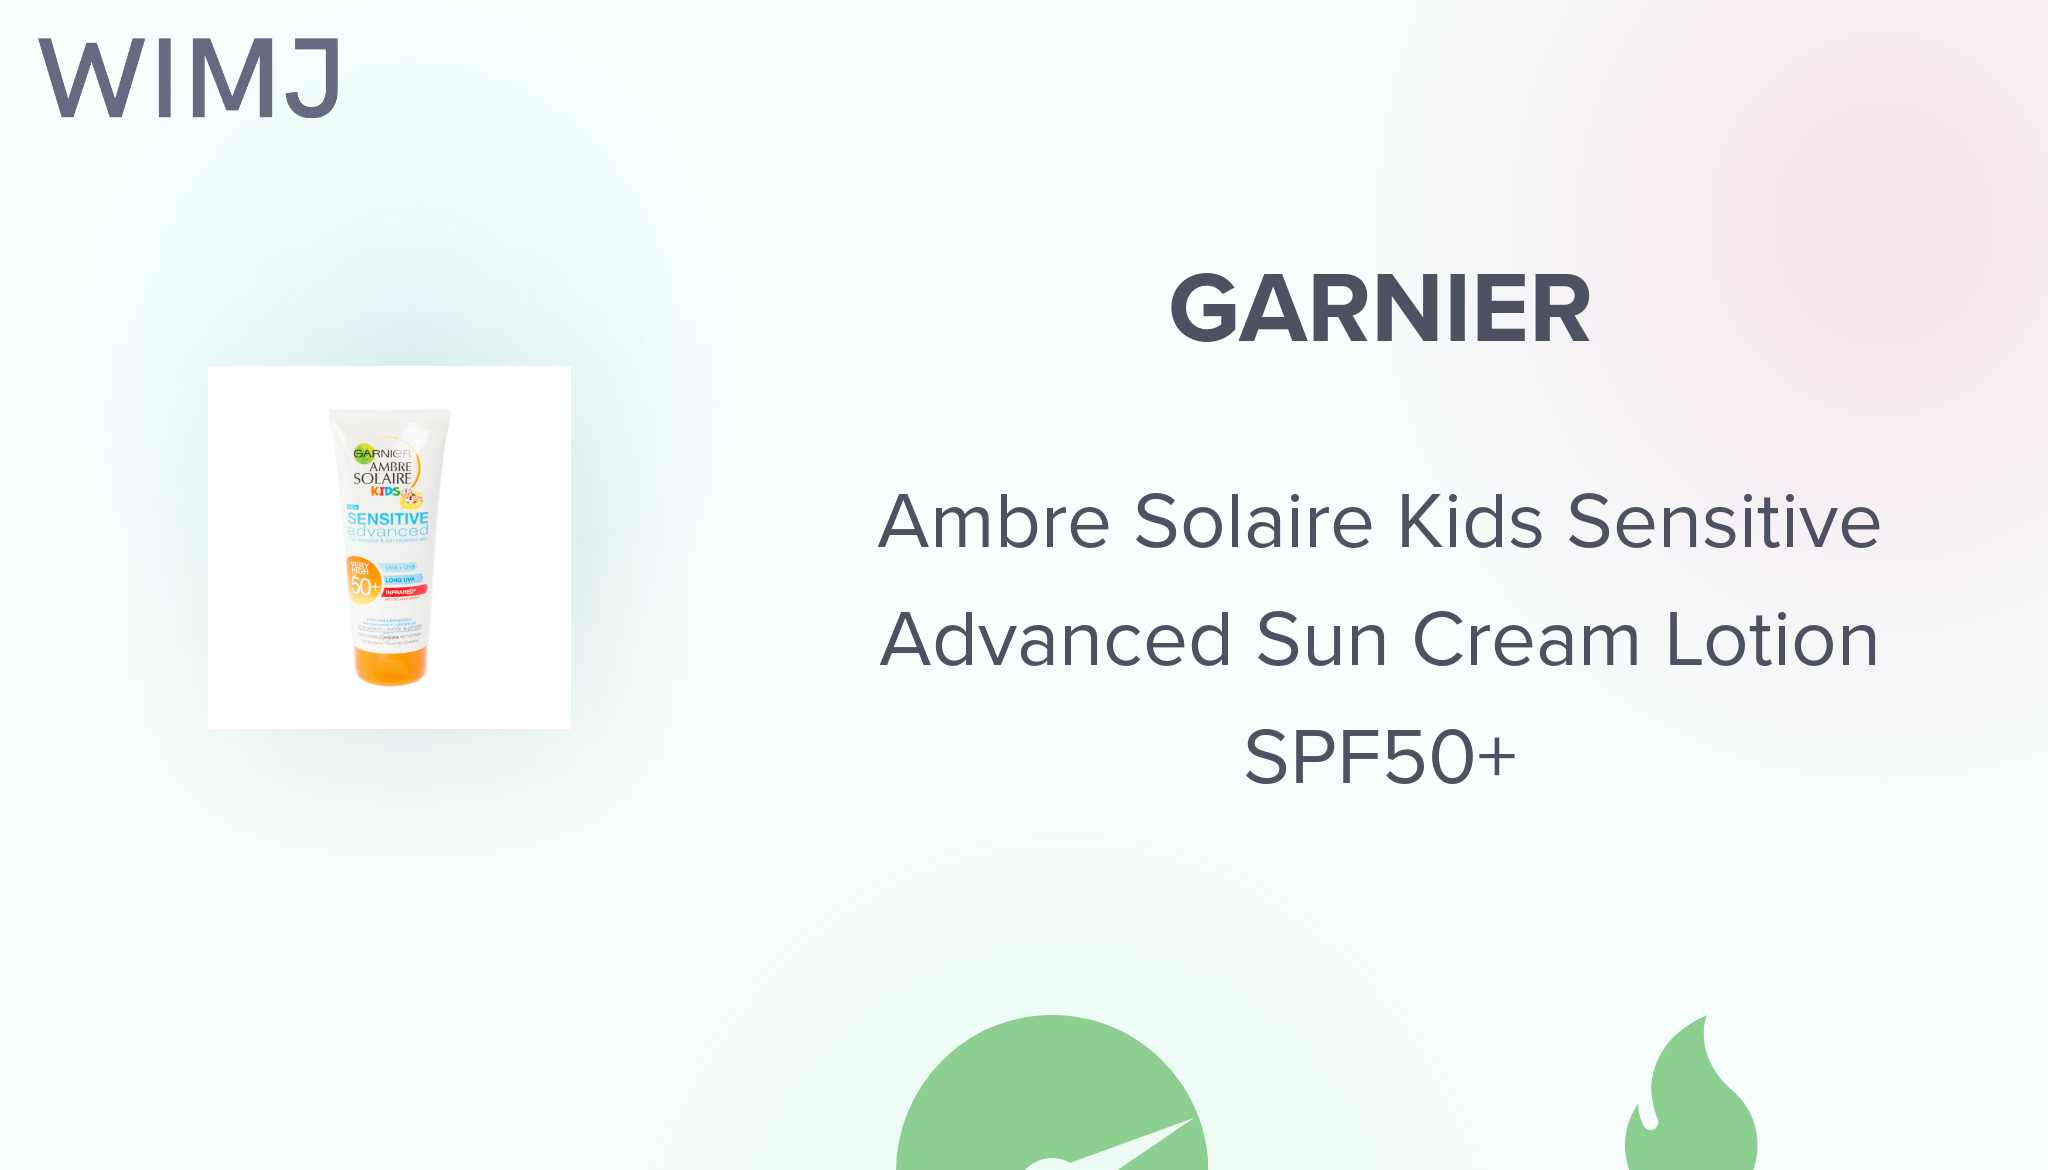 Review: Garnier - Ambre Solaire WIMJ Advanced SPF50+ Kids - Lotion Sensitive Cream Sun